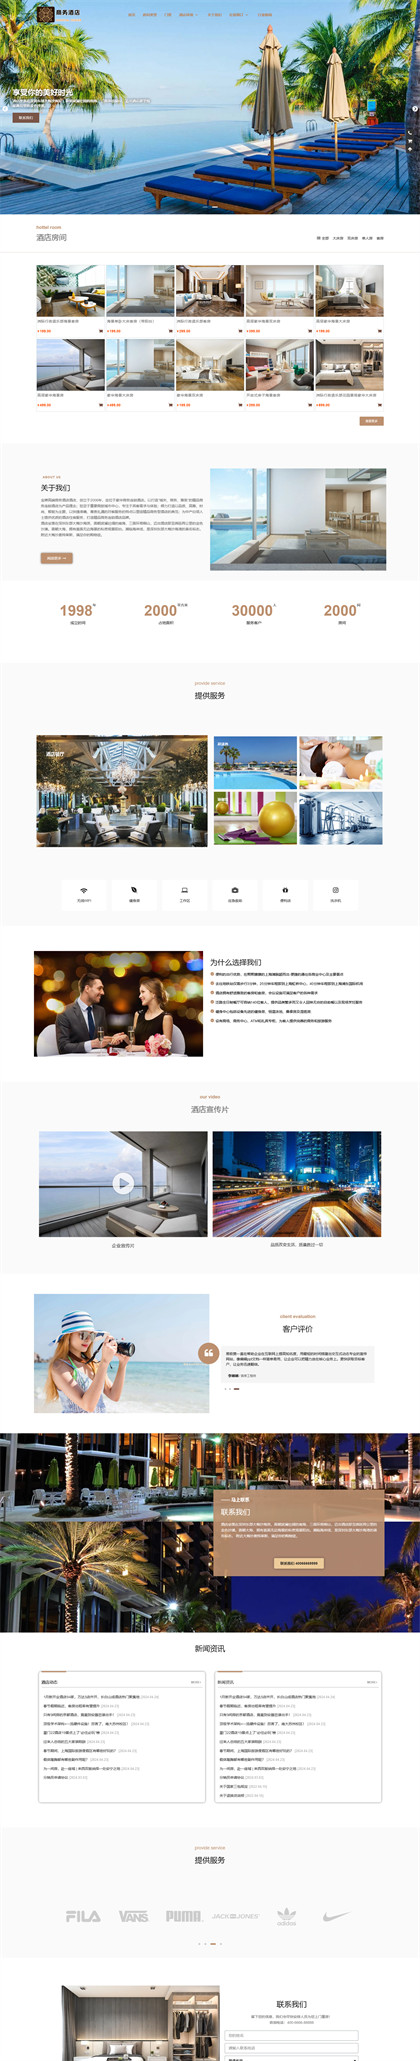 商务酒店-快捷酒店-民宿公寓-酒店预订-酒店商城网站模板网站模板图片